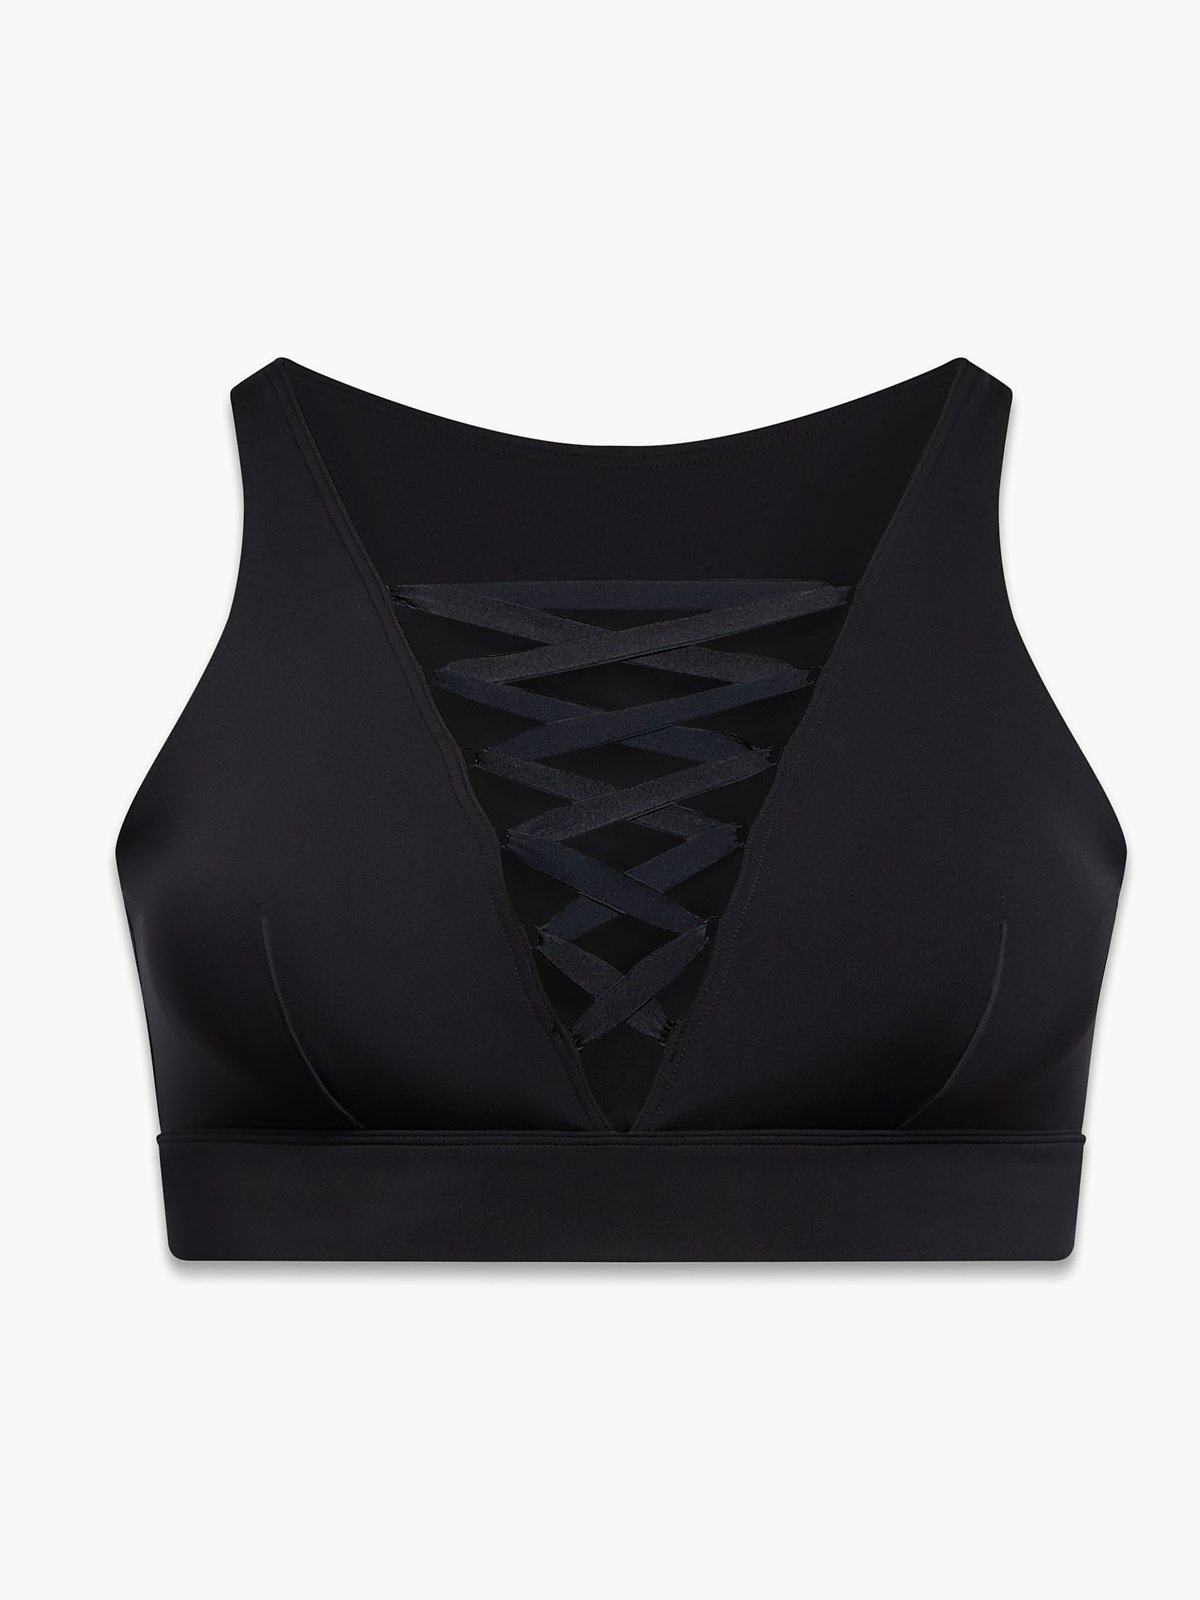 Buy Elegant Beauty Back Camisole Lace Wrapped Padded Sports Bra - Black, Fashion